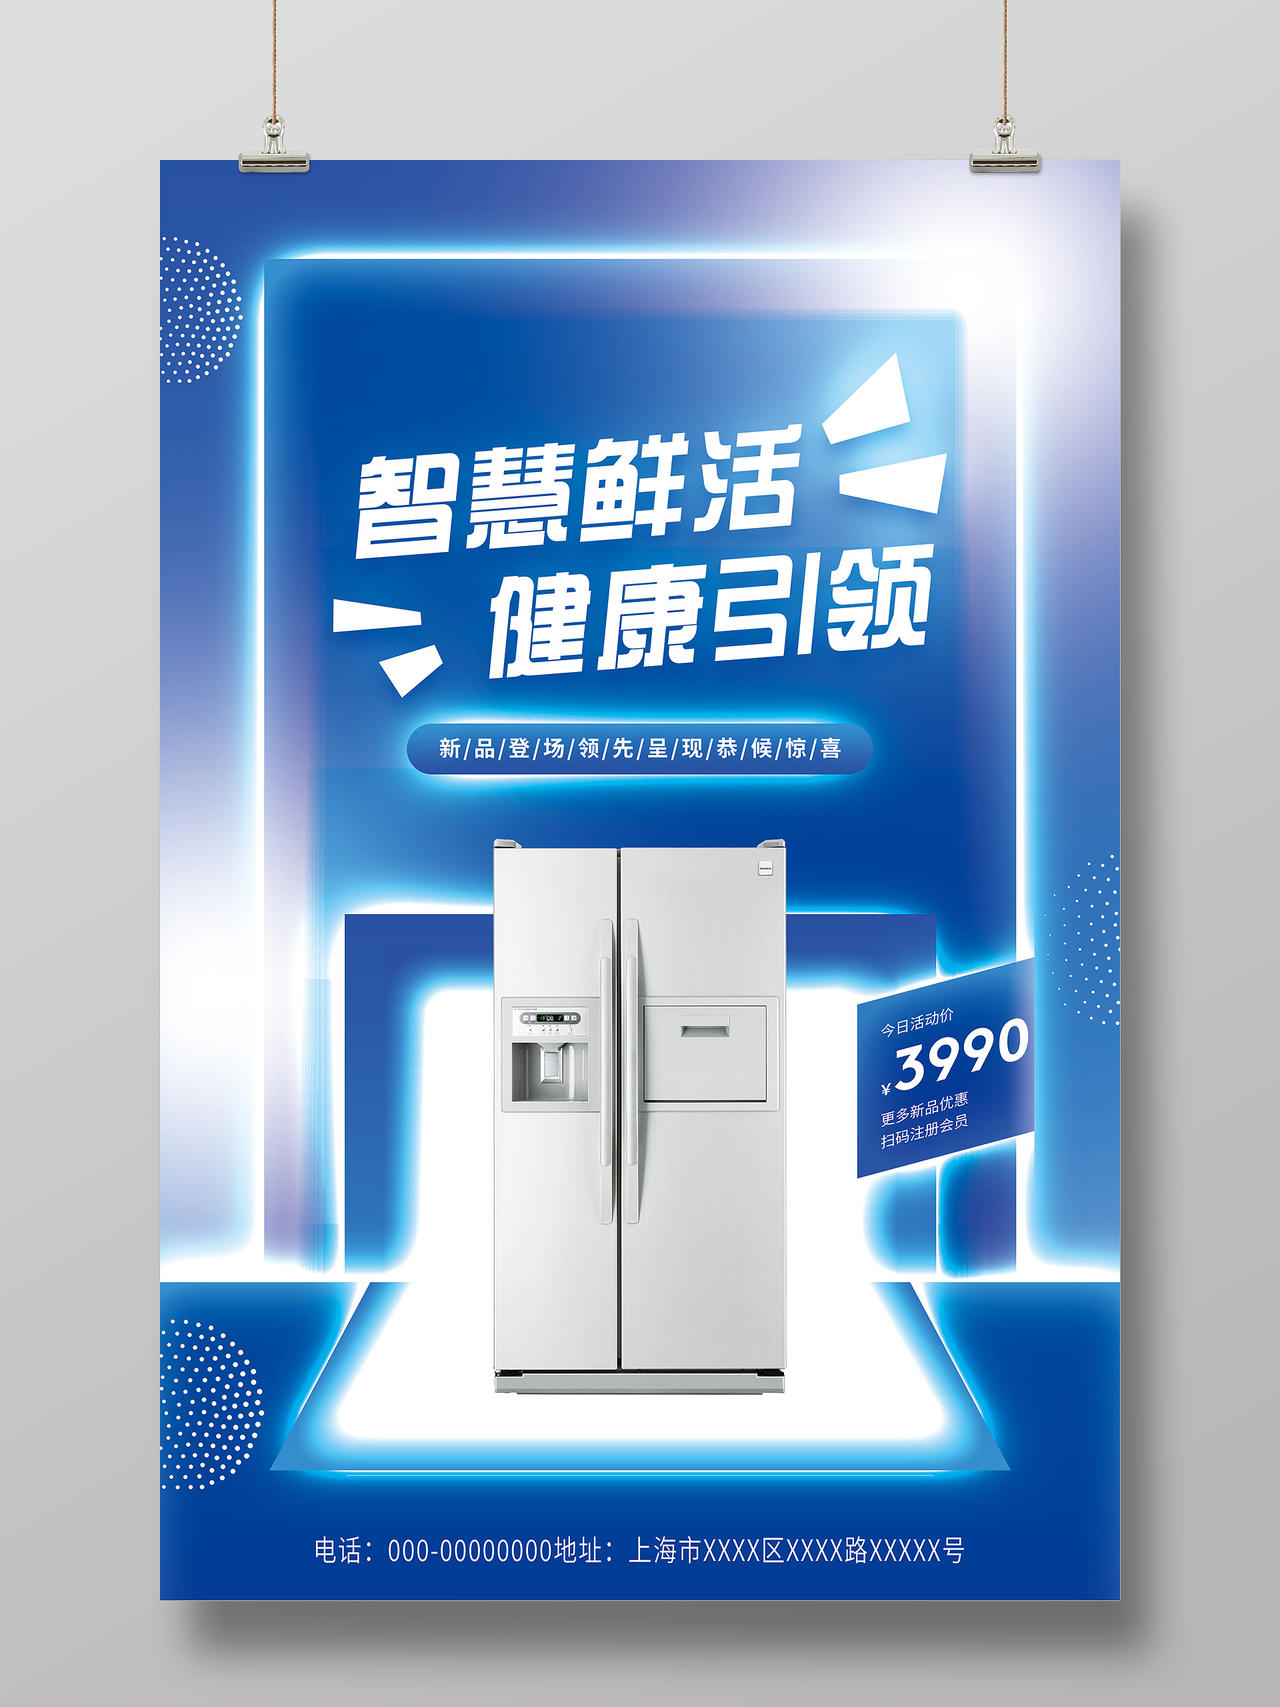 蓝色炫彩智慧鲜活健康引领电器家电冰箱促销活动海报